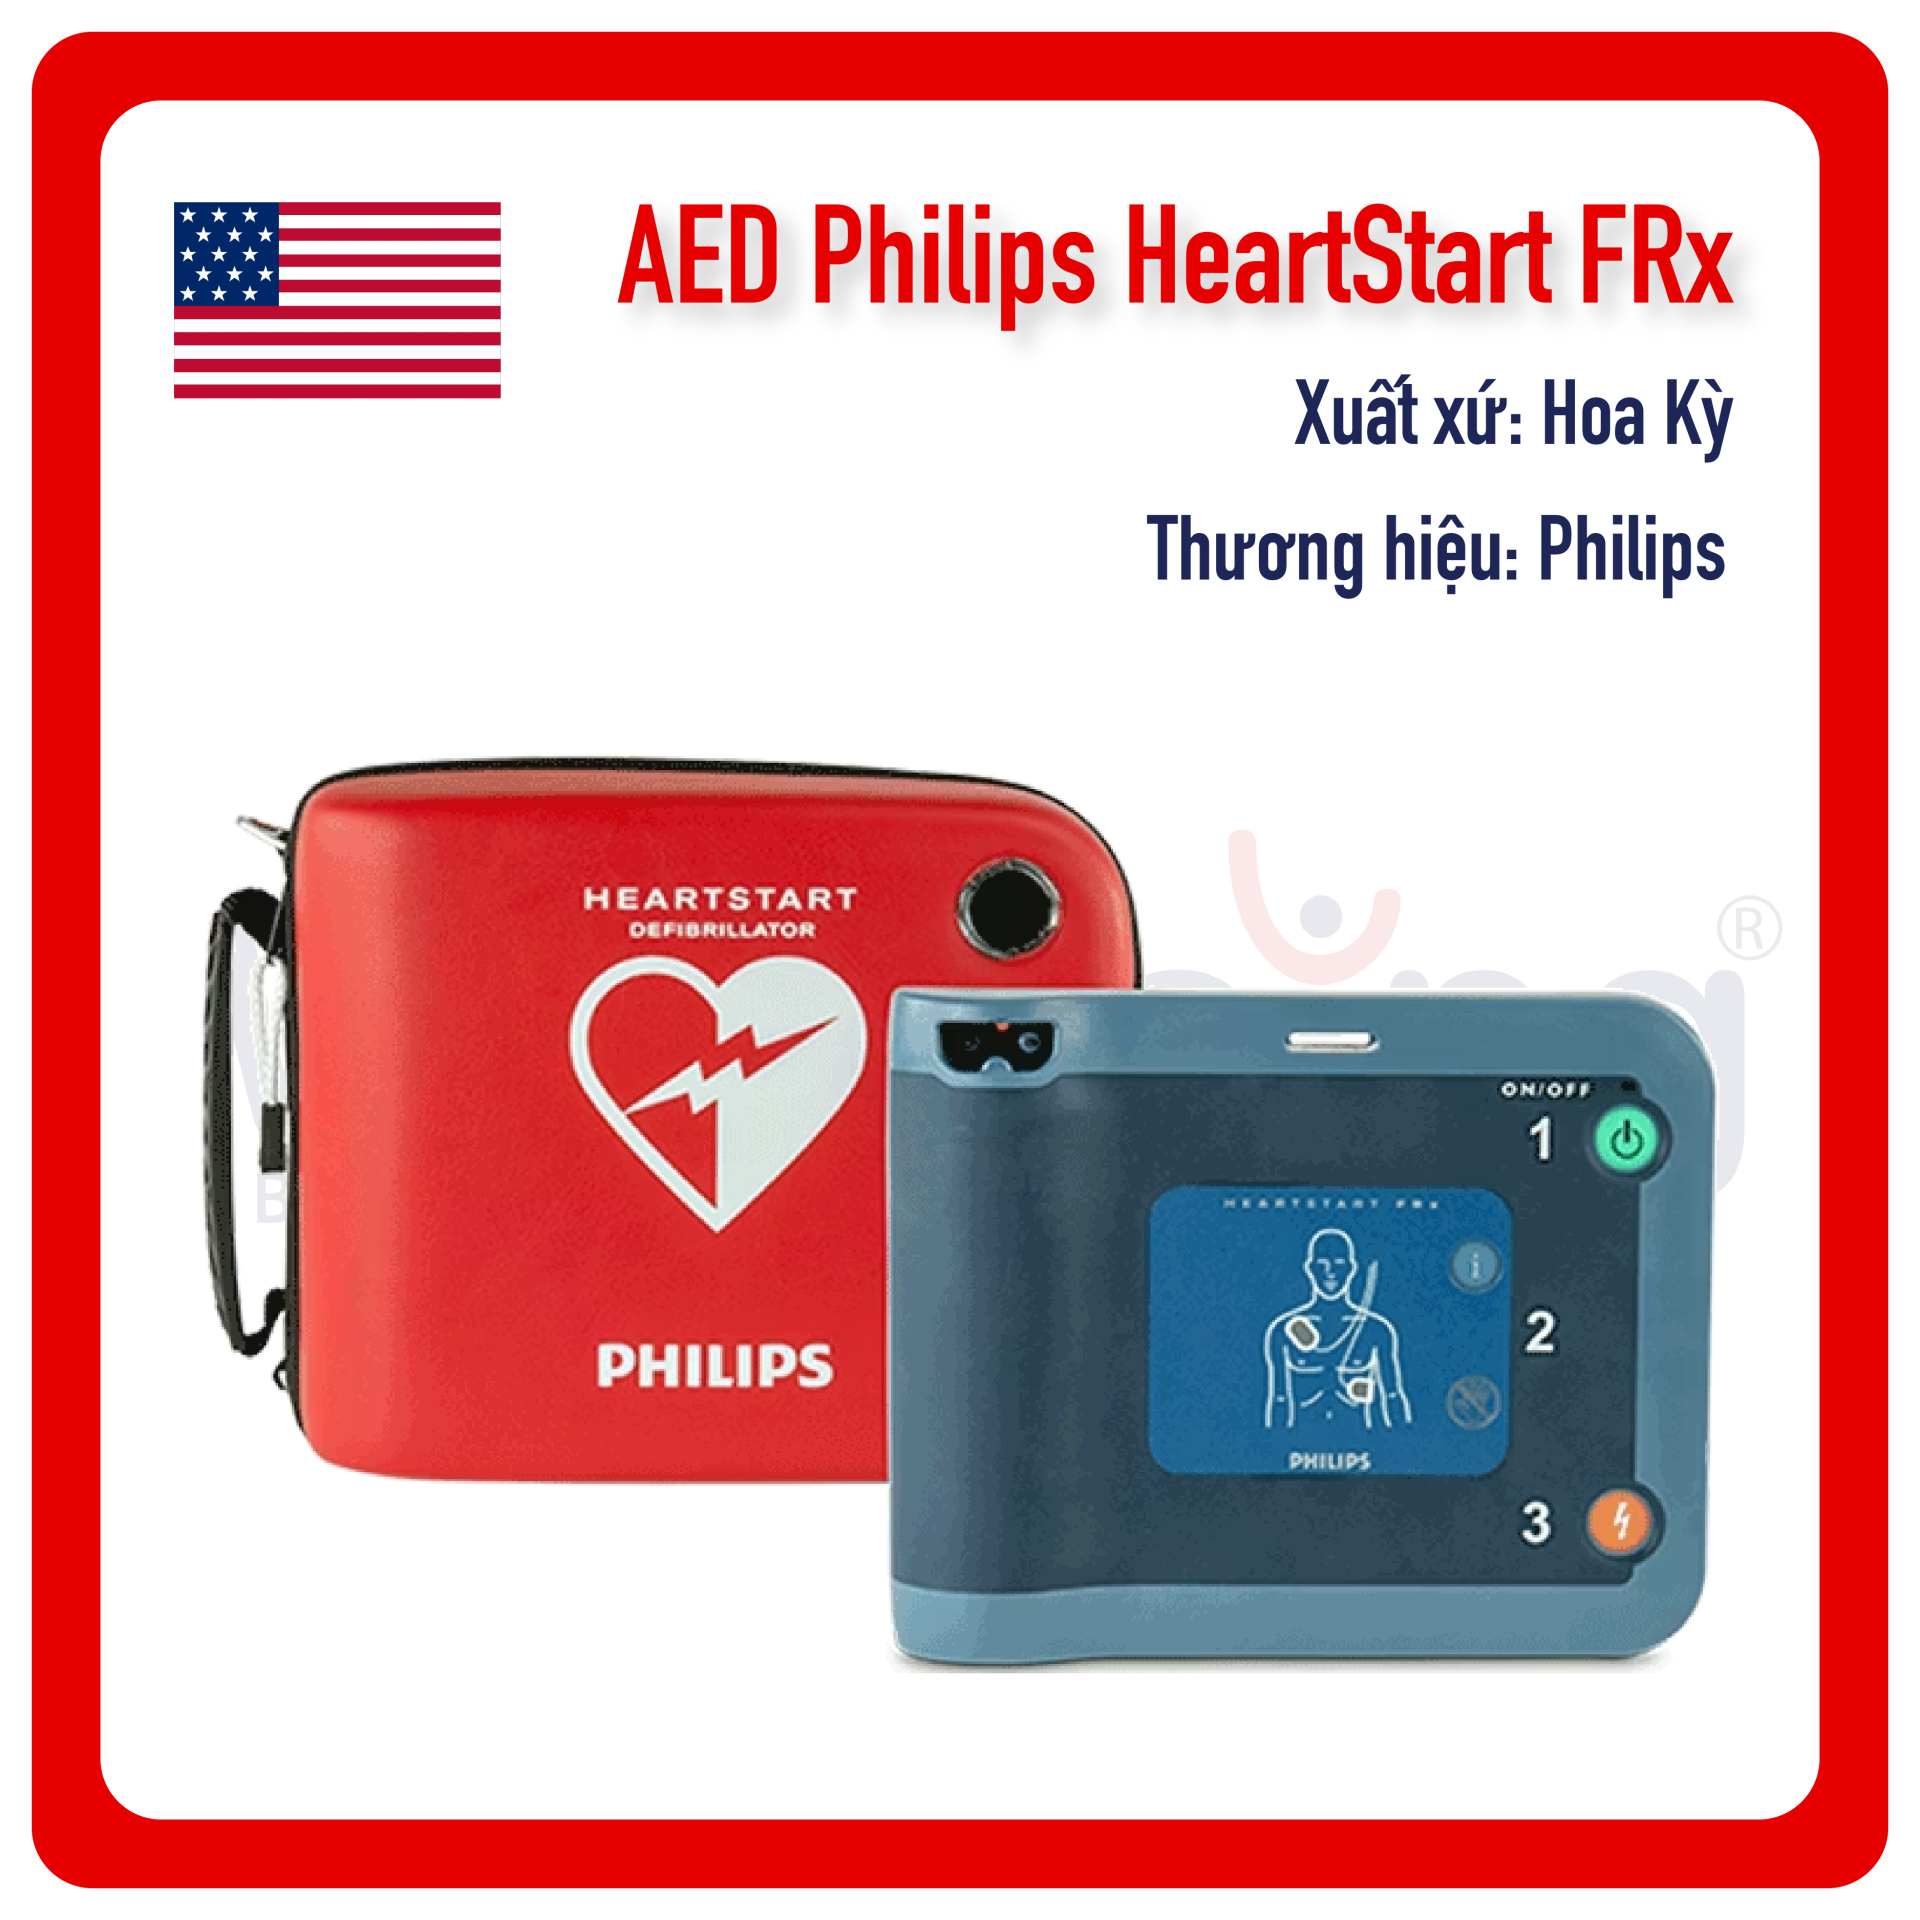 MÁY AED Philips HeartStart FRx